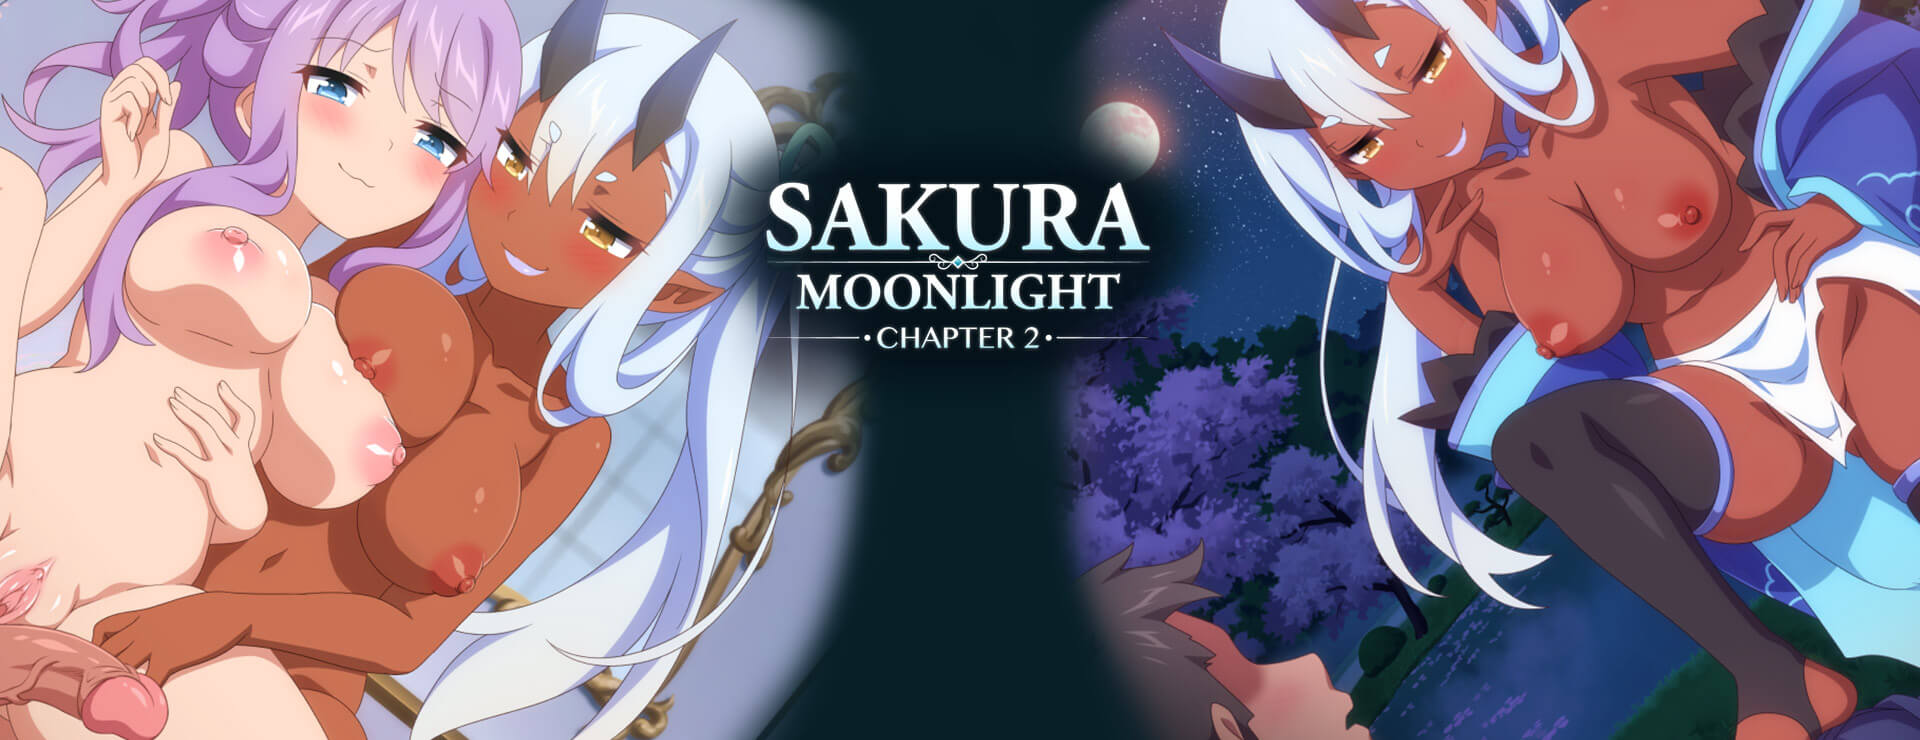 Sakura Moonlight Chapter 2 - Powieść wizualna Gra